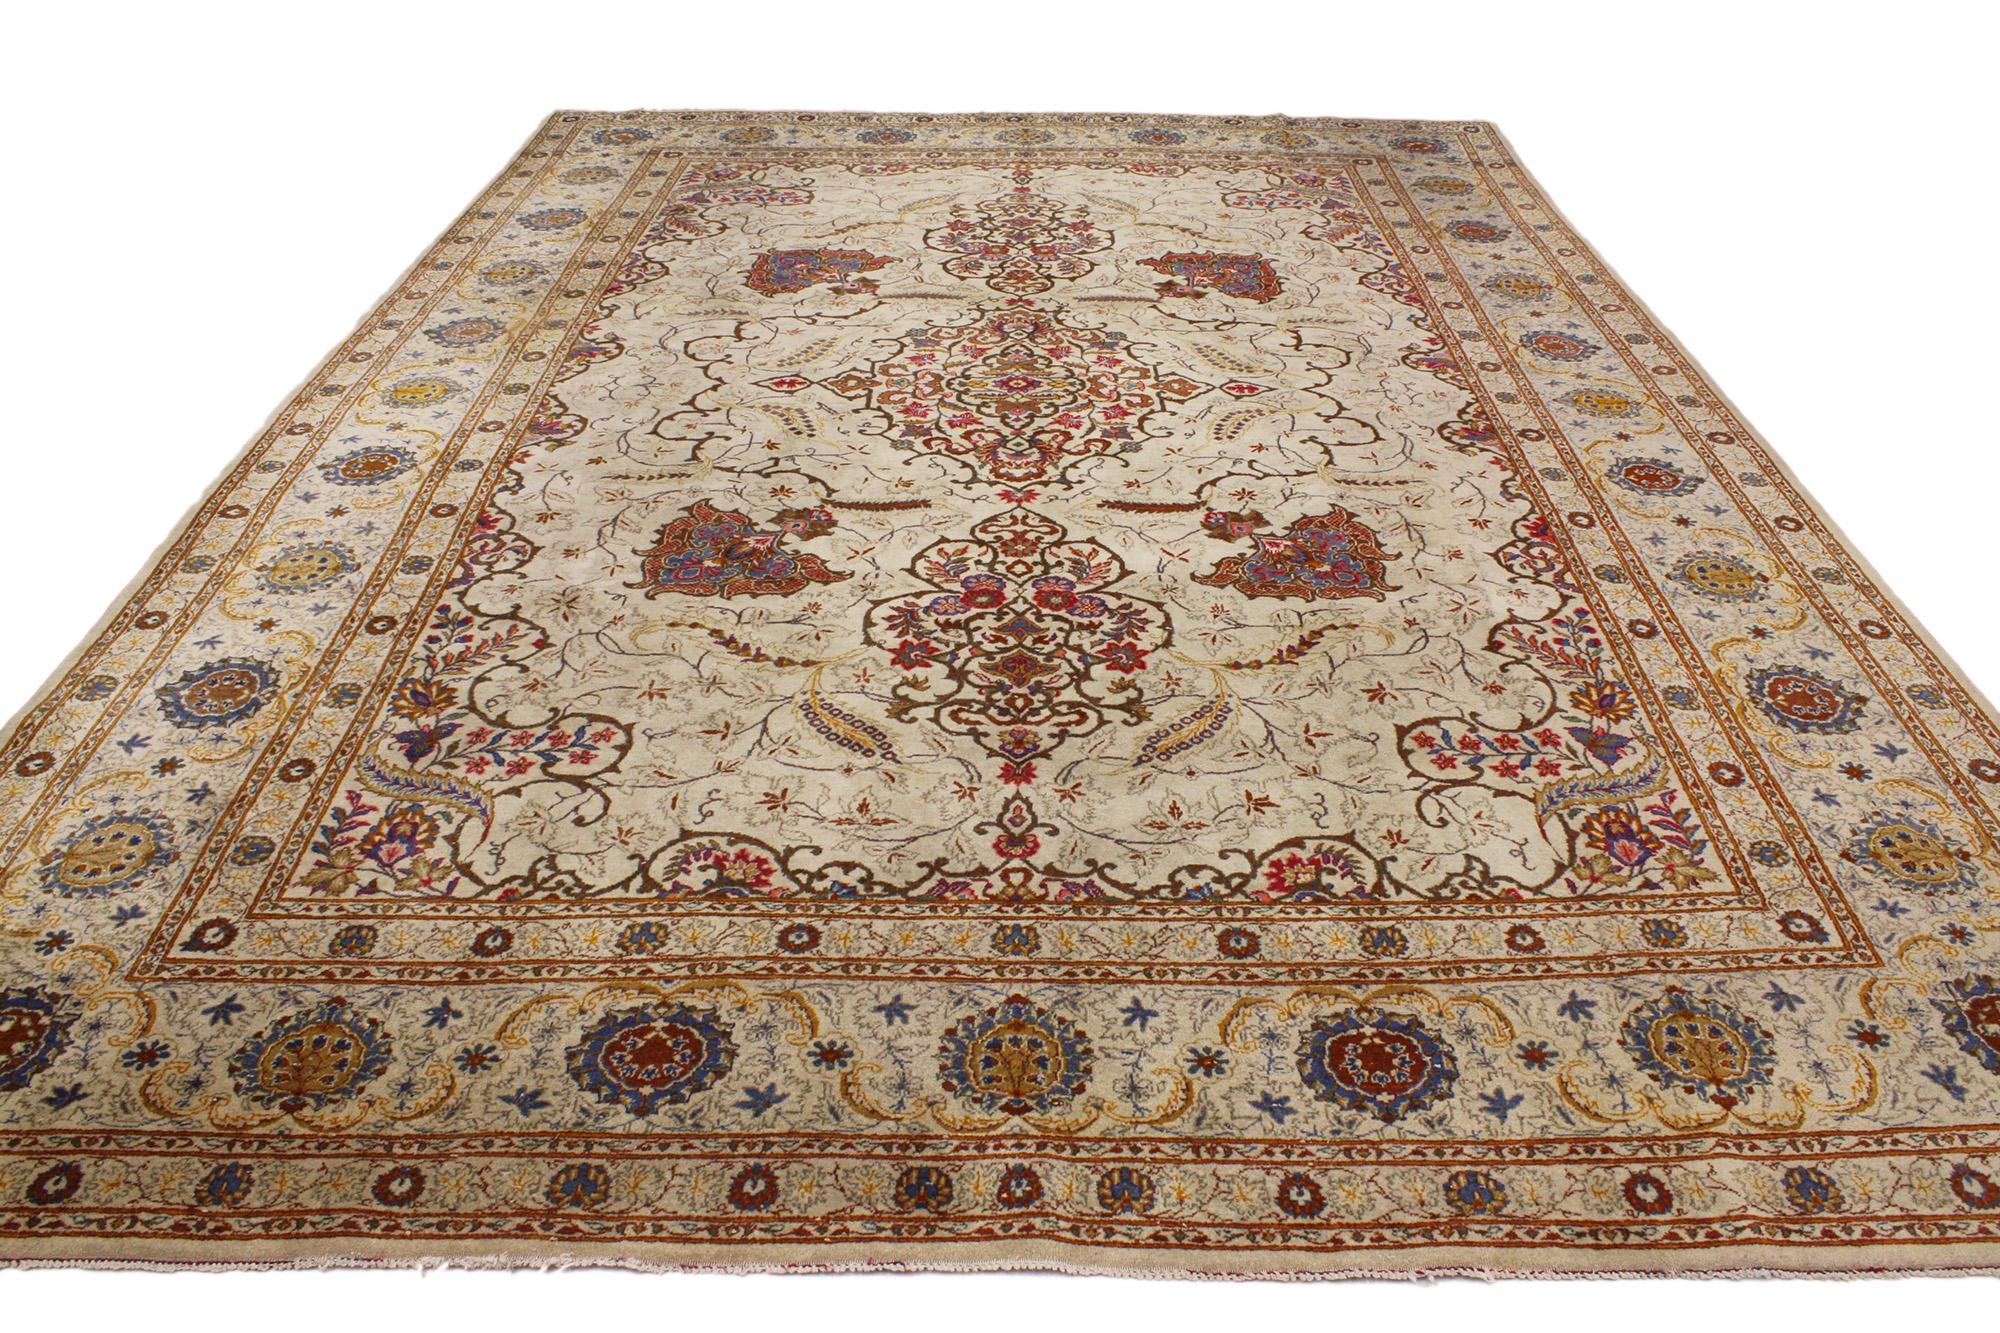 73351 Antiker persischer Kashan-Teppich, 08'09 x 12'06. Persische Kashan-Teppiche sind sorgfältig gefertigte, handgeknüpfte Teppiche aus Kashan, Iran, die für ihre komplizierten Designs, ihre hervorragende Handwerkskunst und ihr historisches Erbe